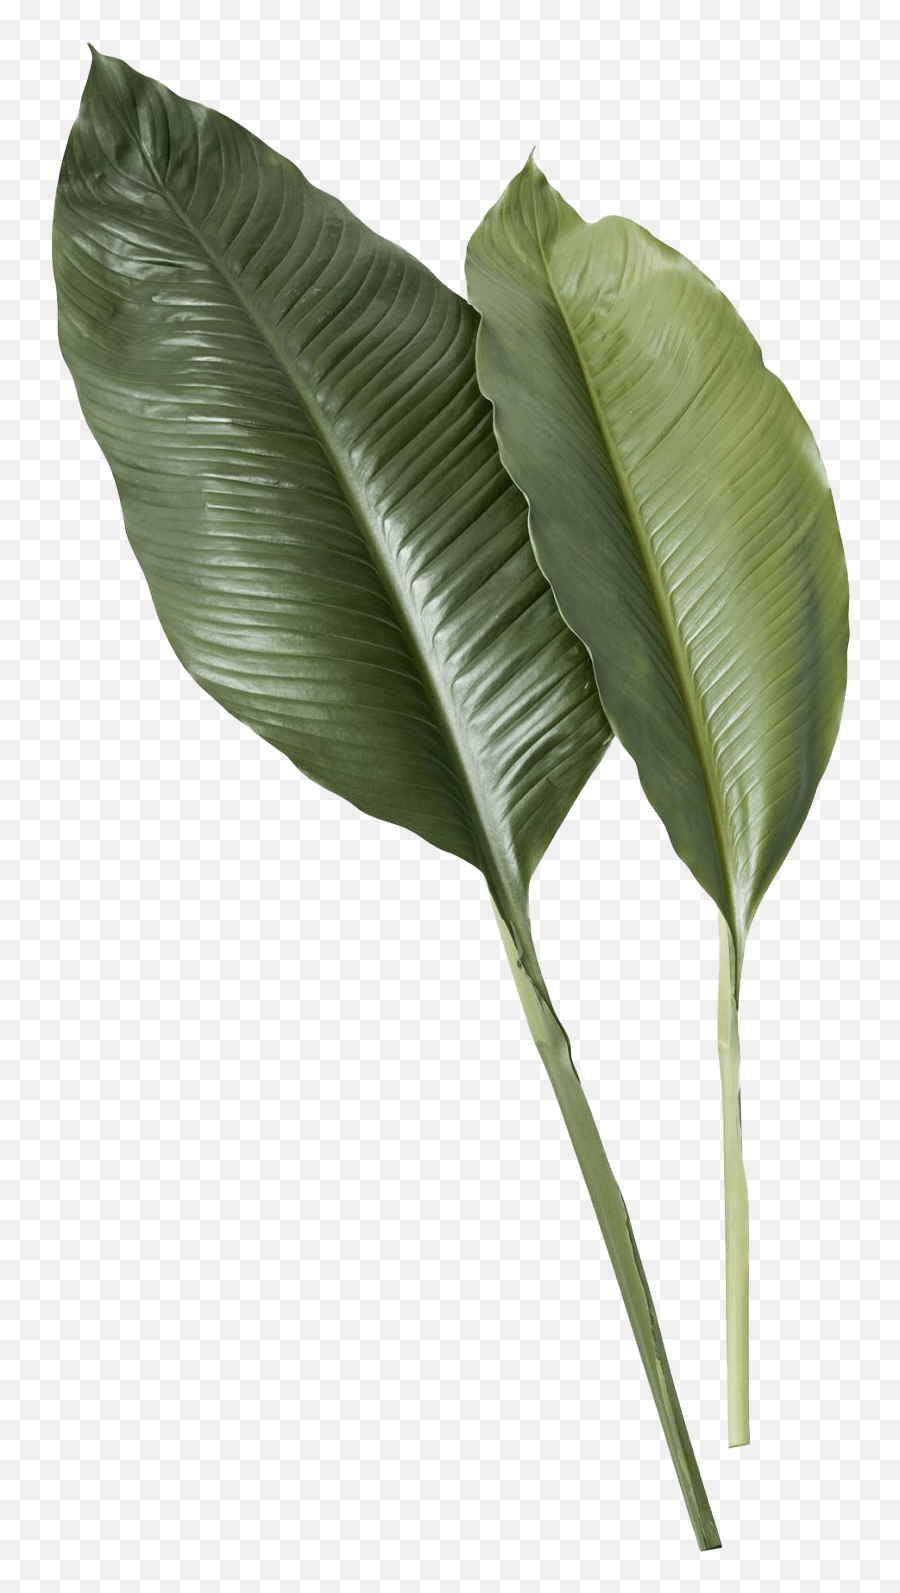 Leaf Png Image - Transparent Tropical Leaf,Banana Leaf Png